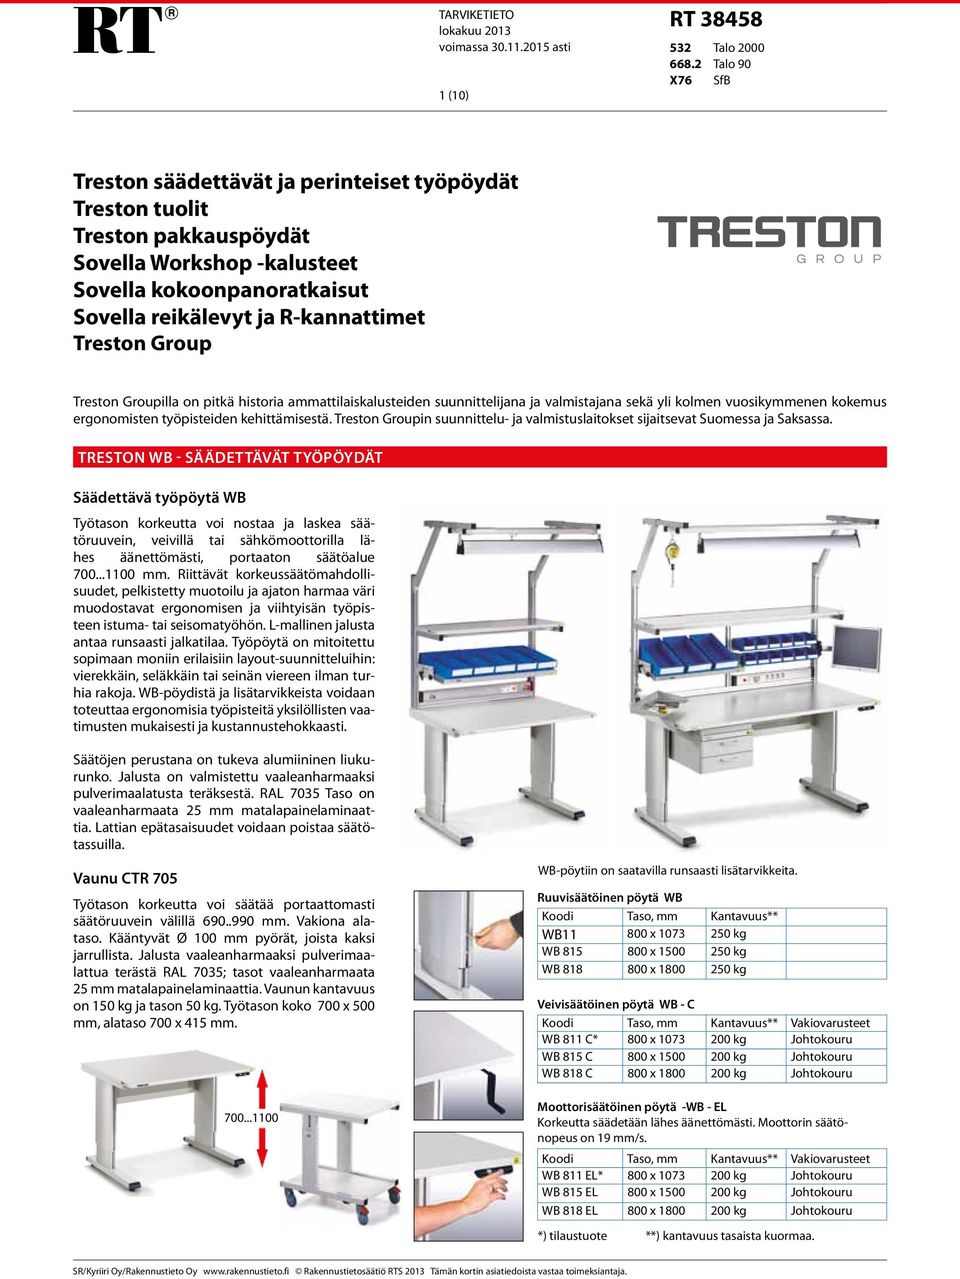 Treston Group Treston Groupilla on pitkä historia ammattilaiskalusteiden suunnittelijana ja valmistajana sekä yli kolmen vuosikymmenen kokemus ergonomisten työpisteiden kehittämisestä.